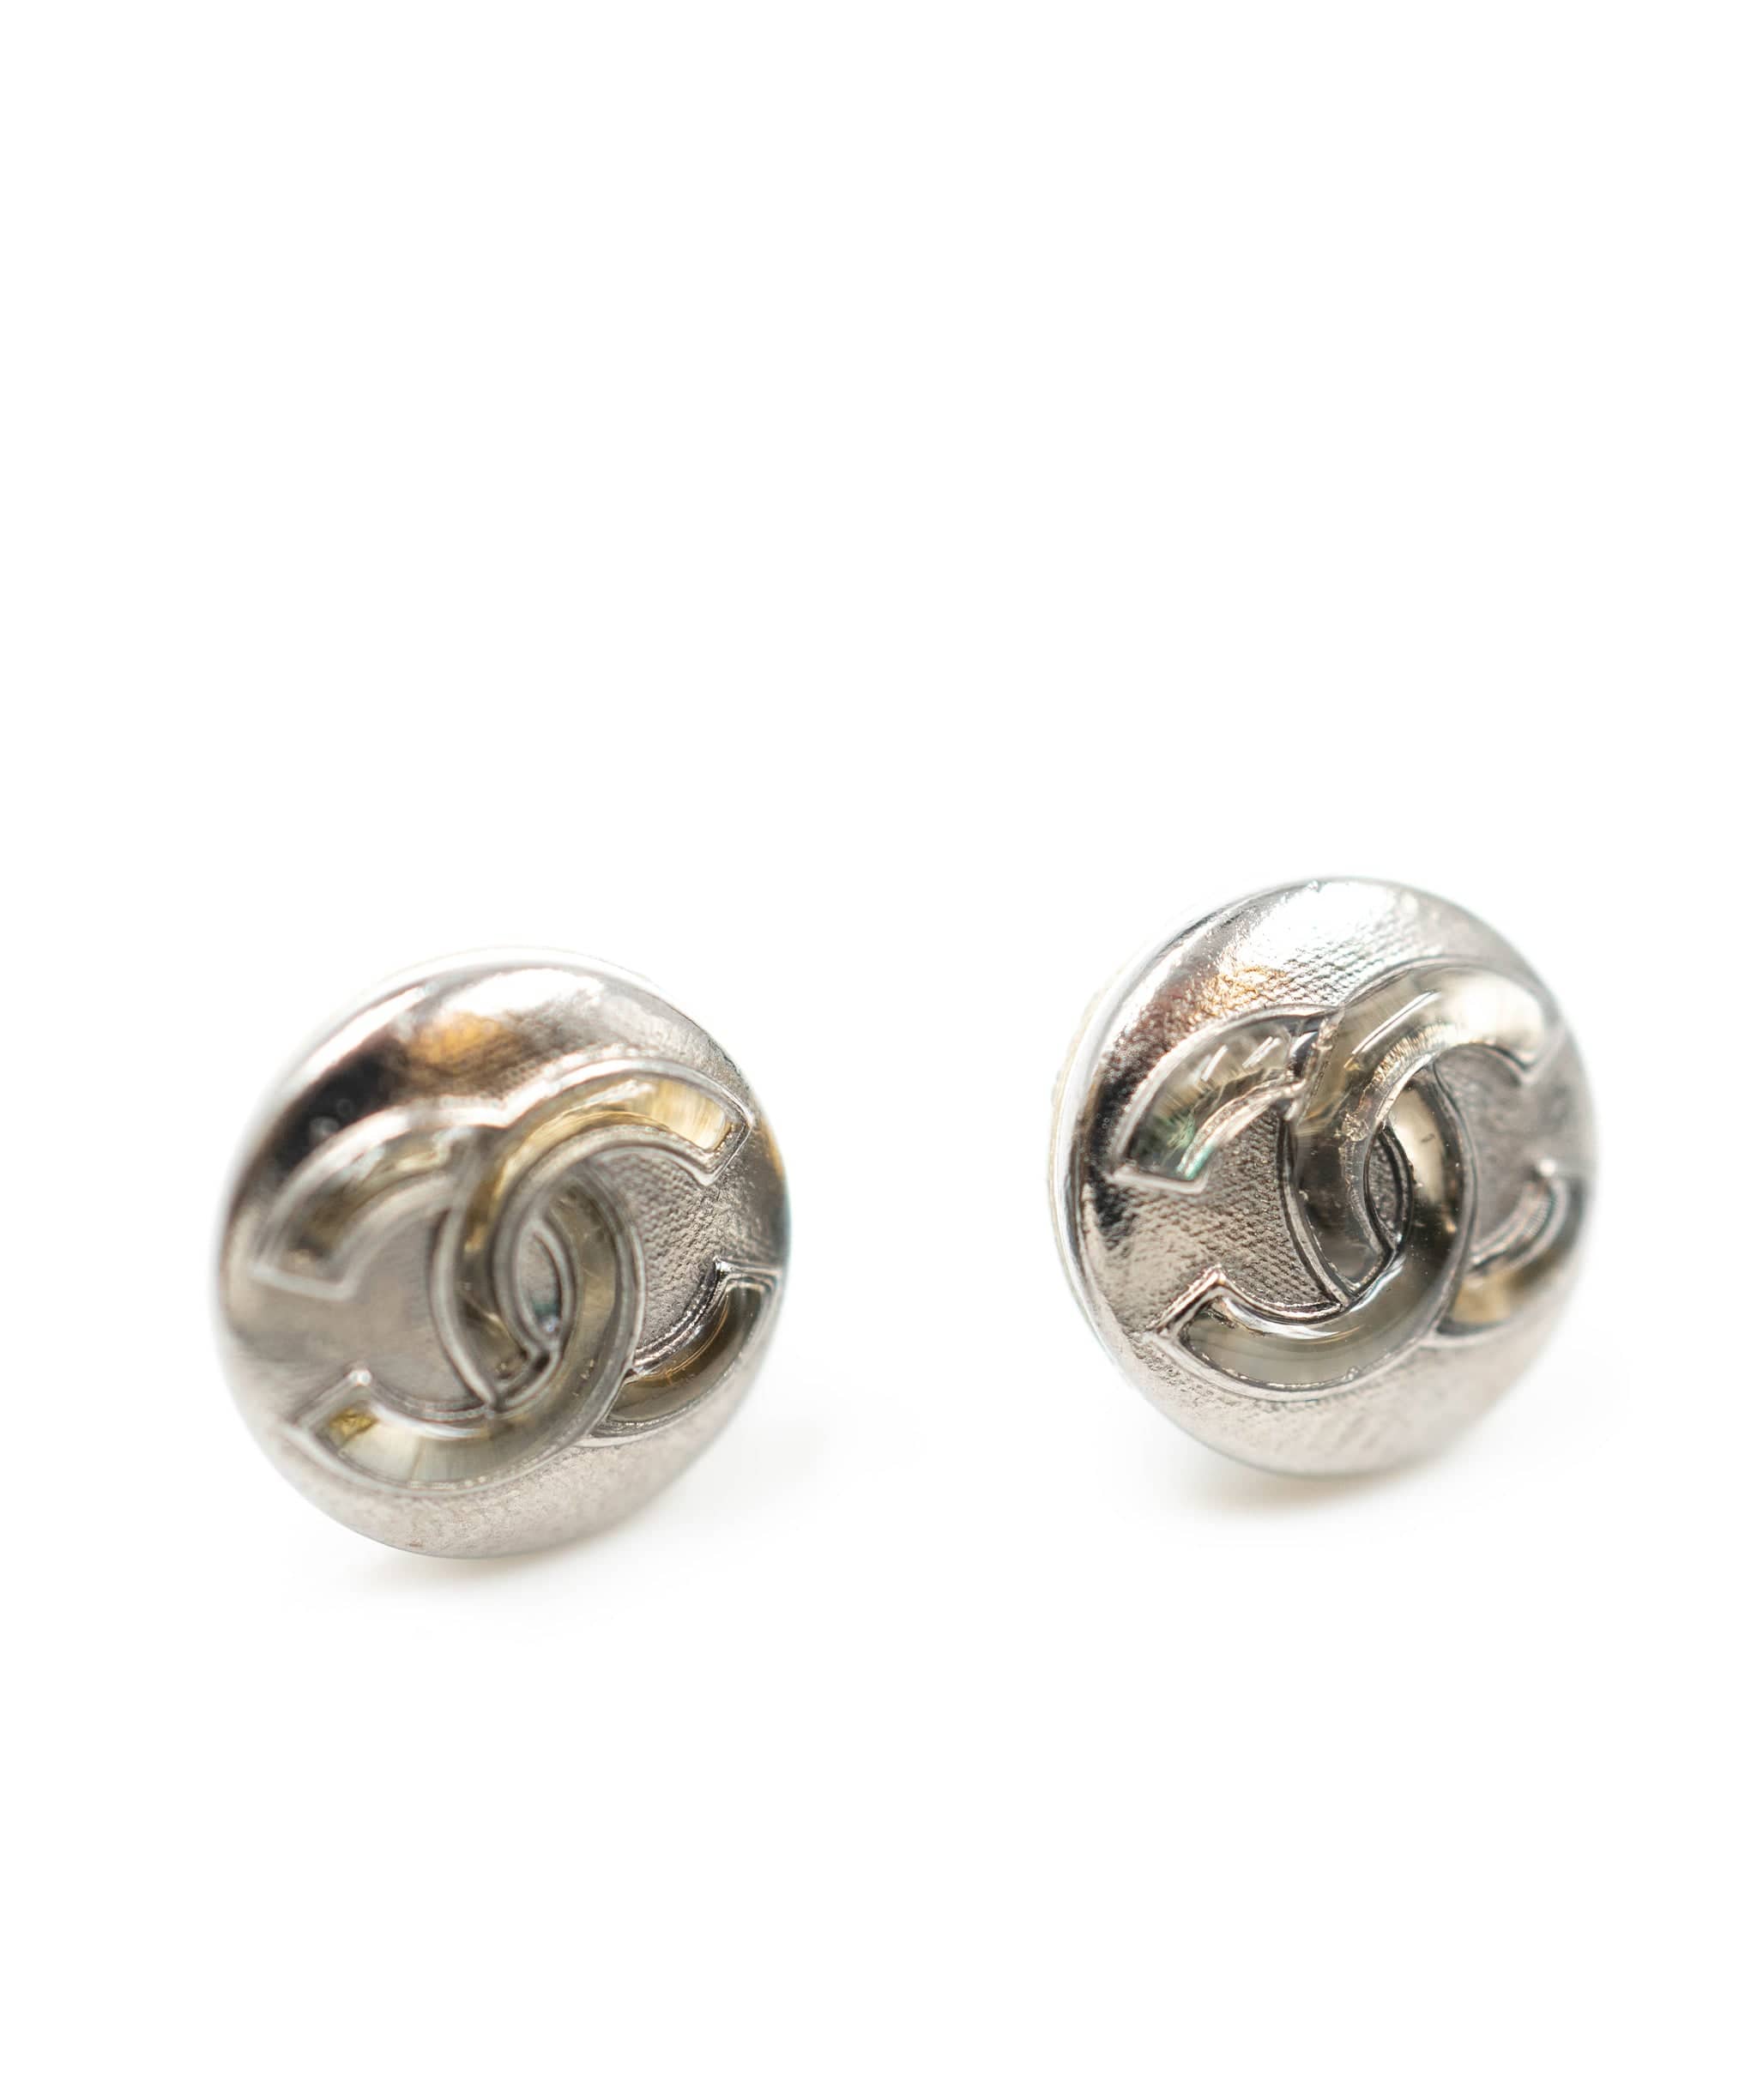 Chanel chanel earrings AGC1184